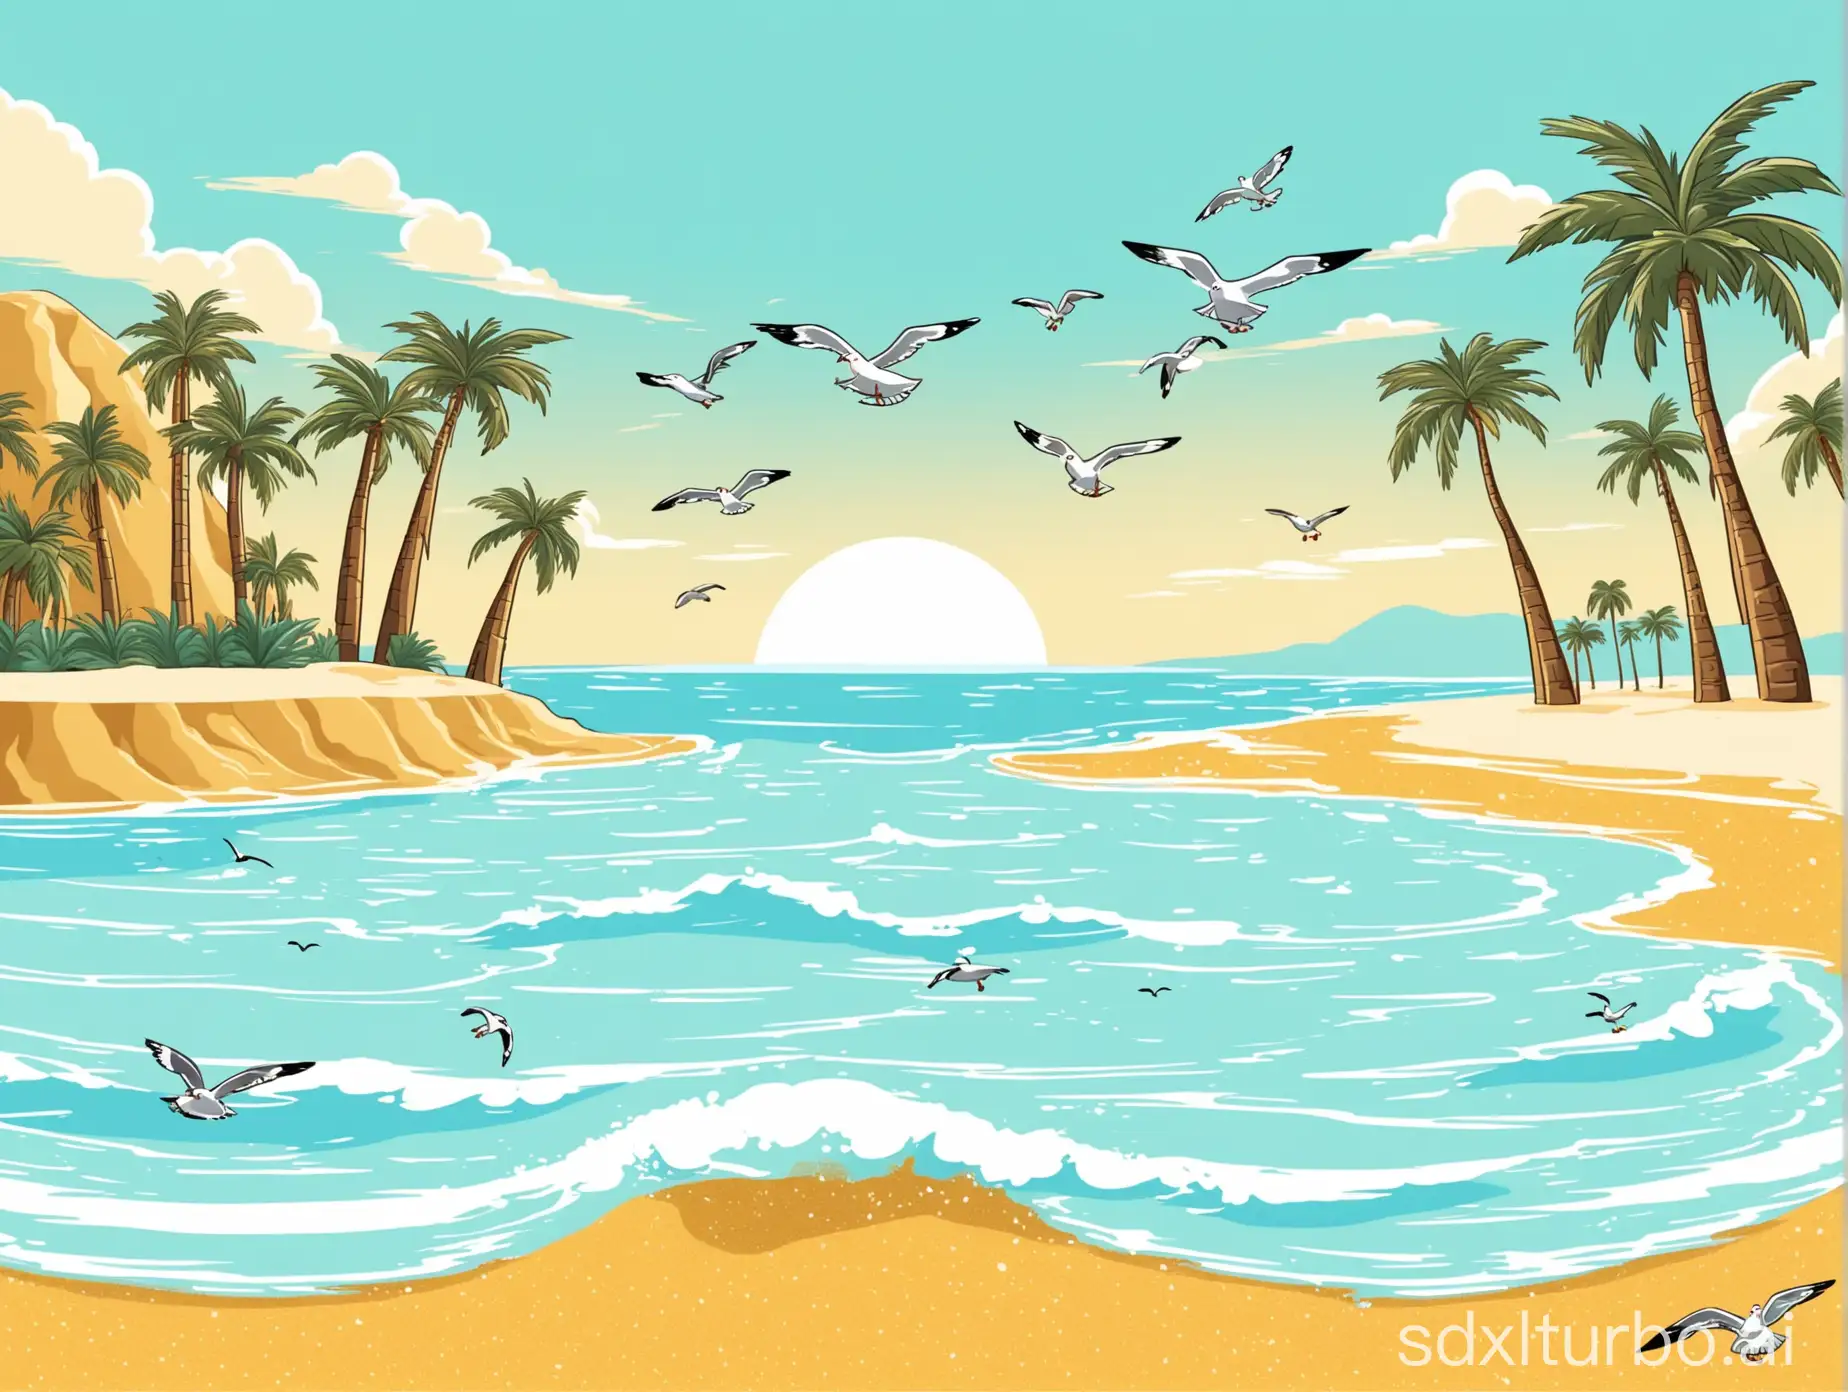 浅蓝色的海水 金色沙滩 有椰树 有几只海鸟 浅色系 卡通画风
